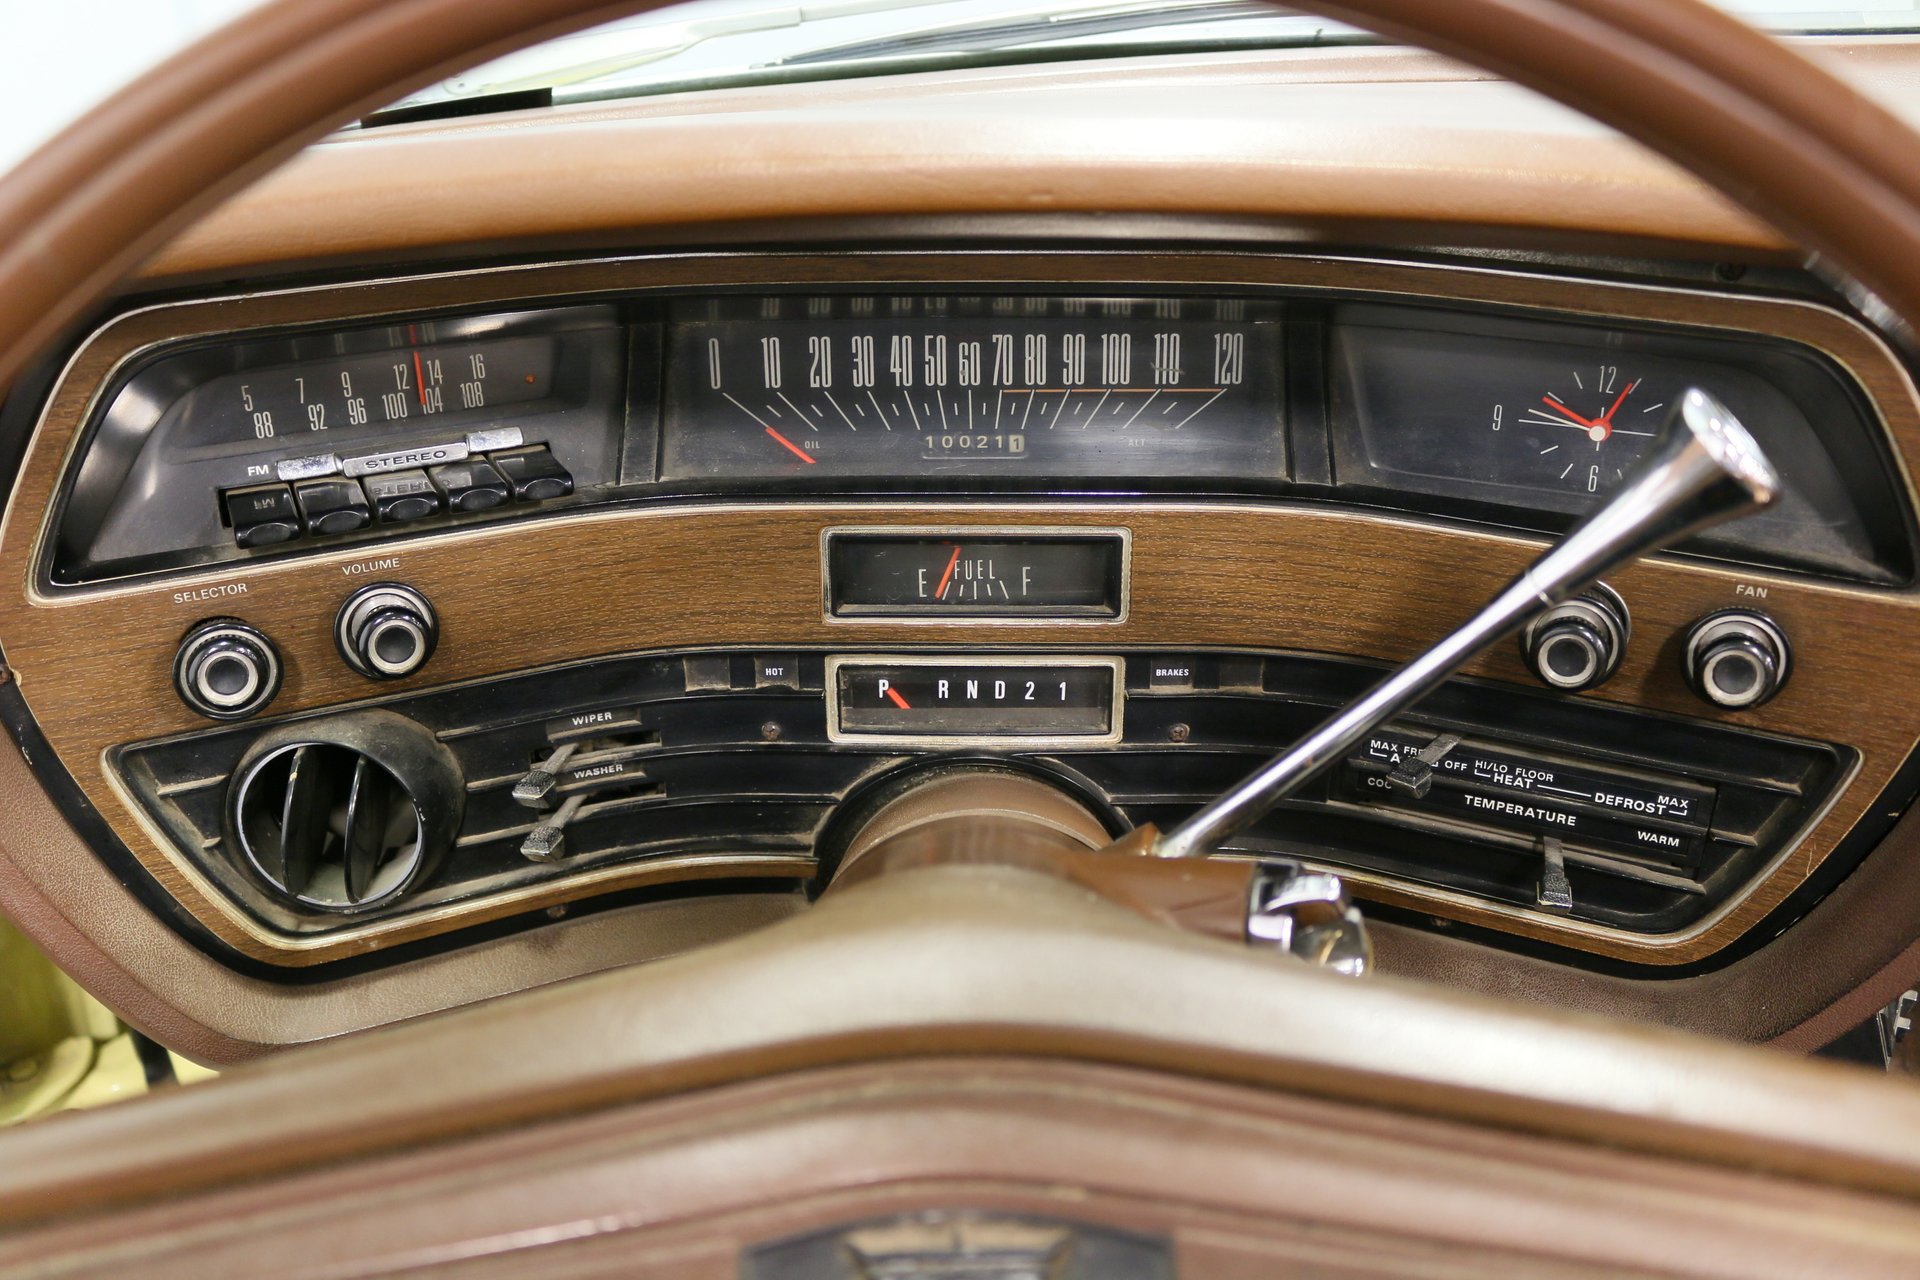 1970 Ford Galaxie 500 Interior